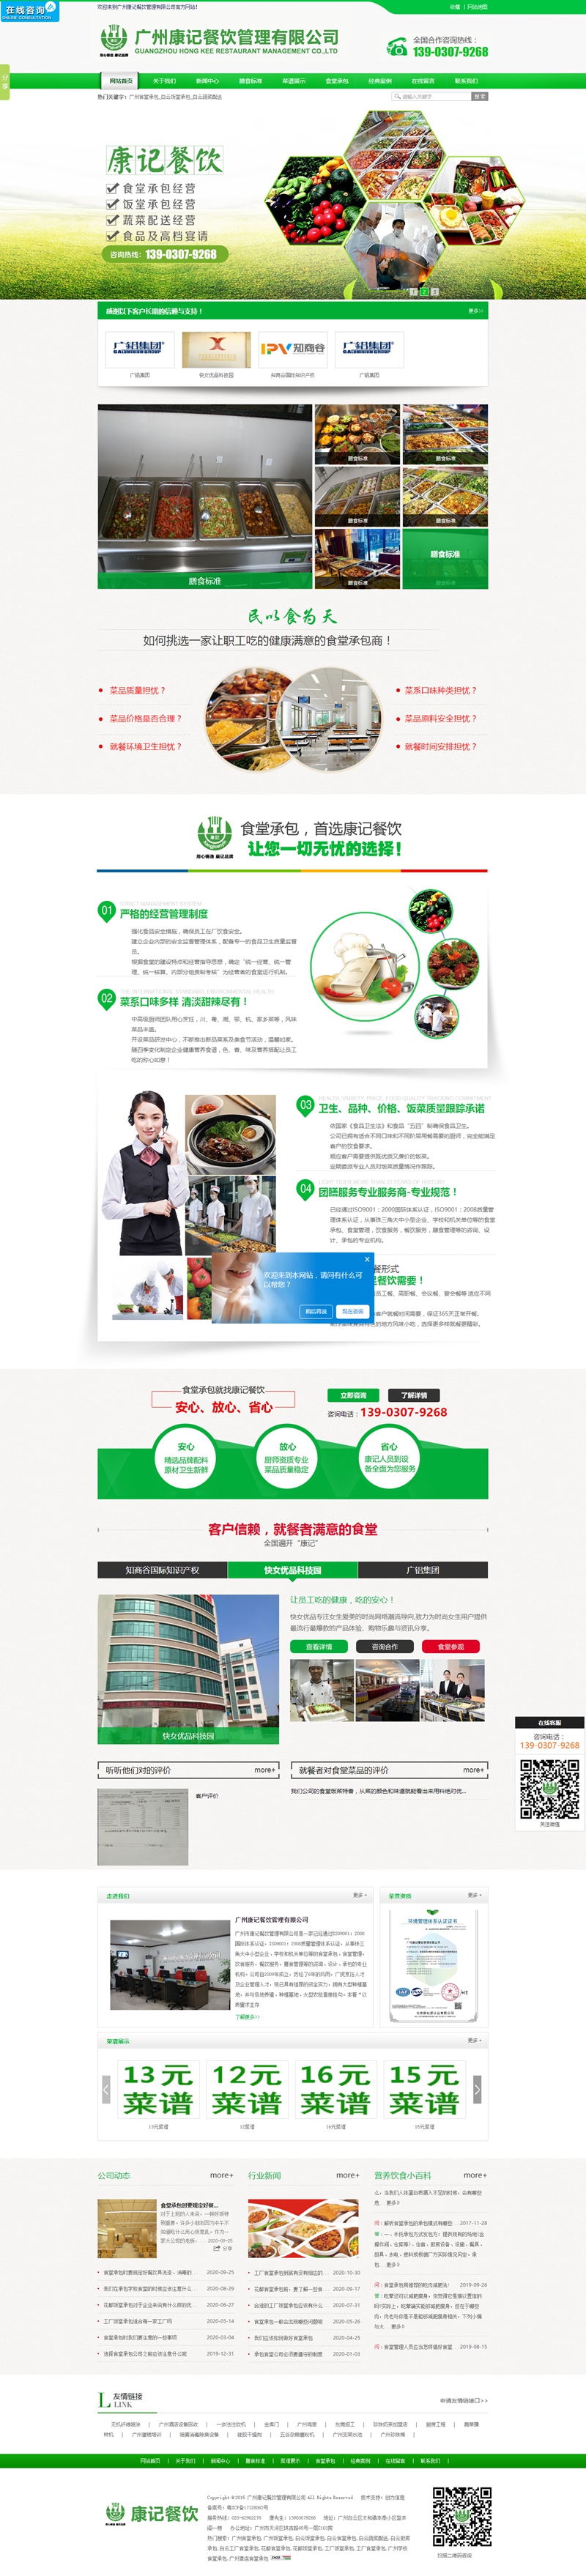 康记餐饮管理官方网站建设首页效果图展示